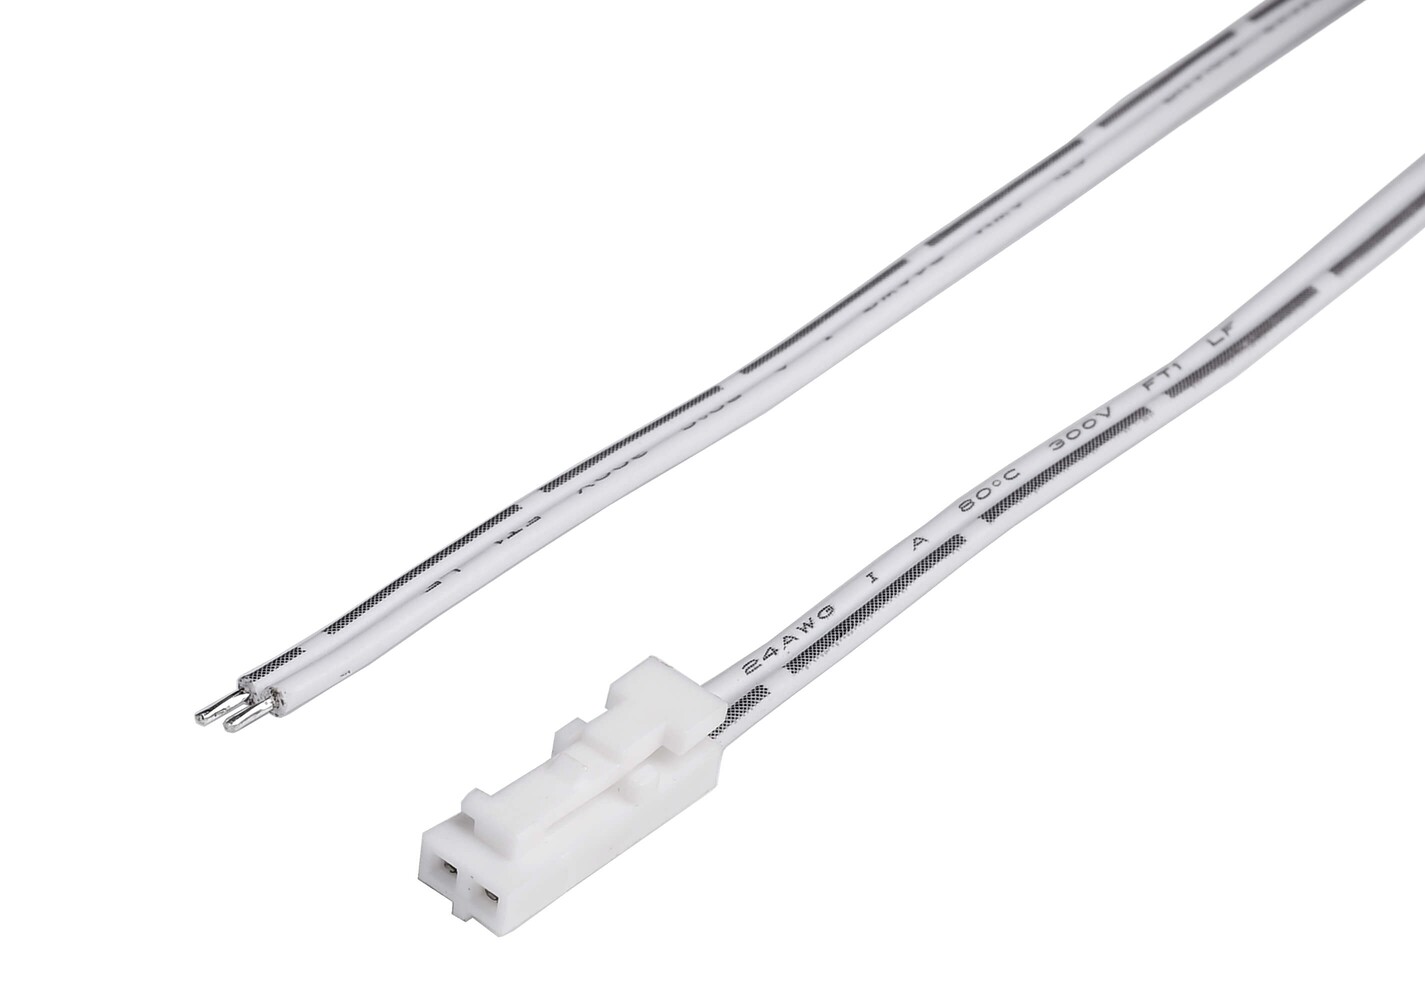 Langlebiges und haltbares Anschlusskabel und Stecker von Deko-Light, ideal für eine optimale Stromübertragung.